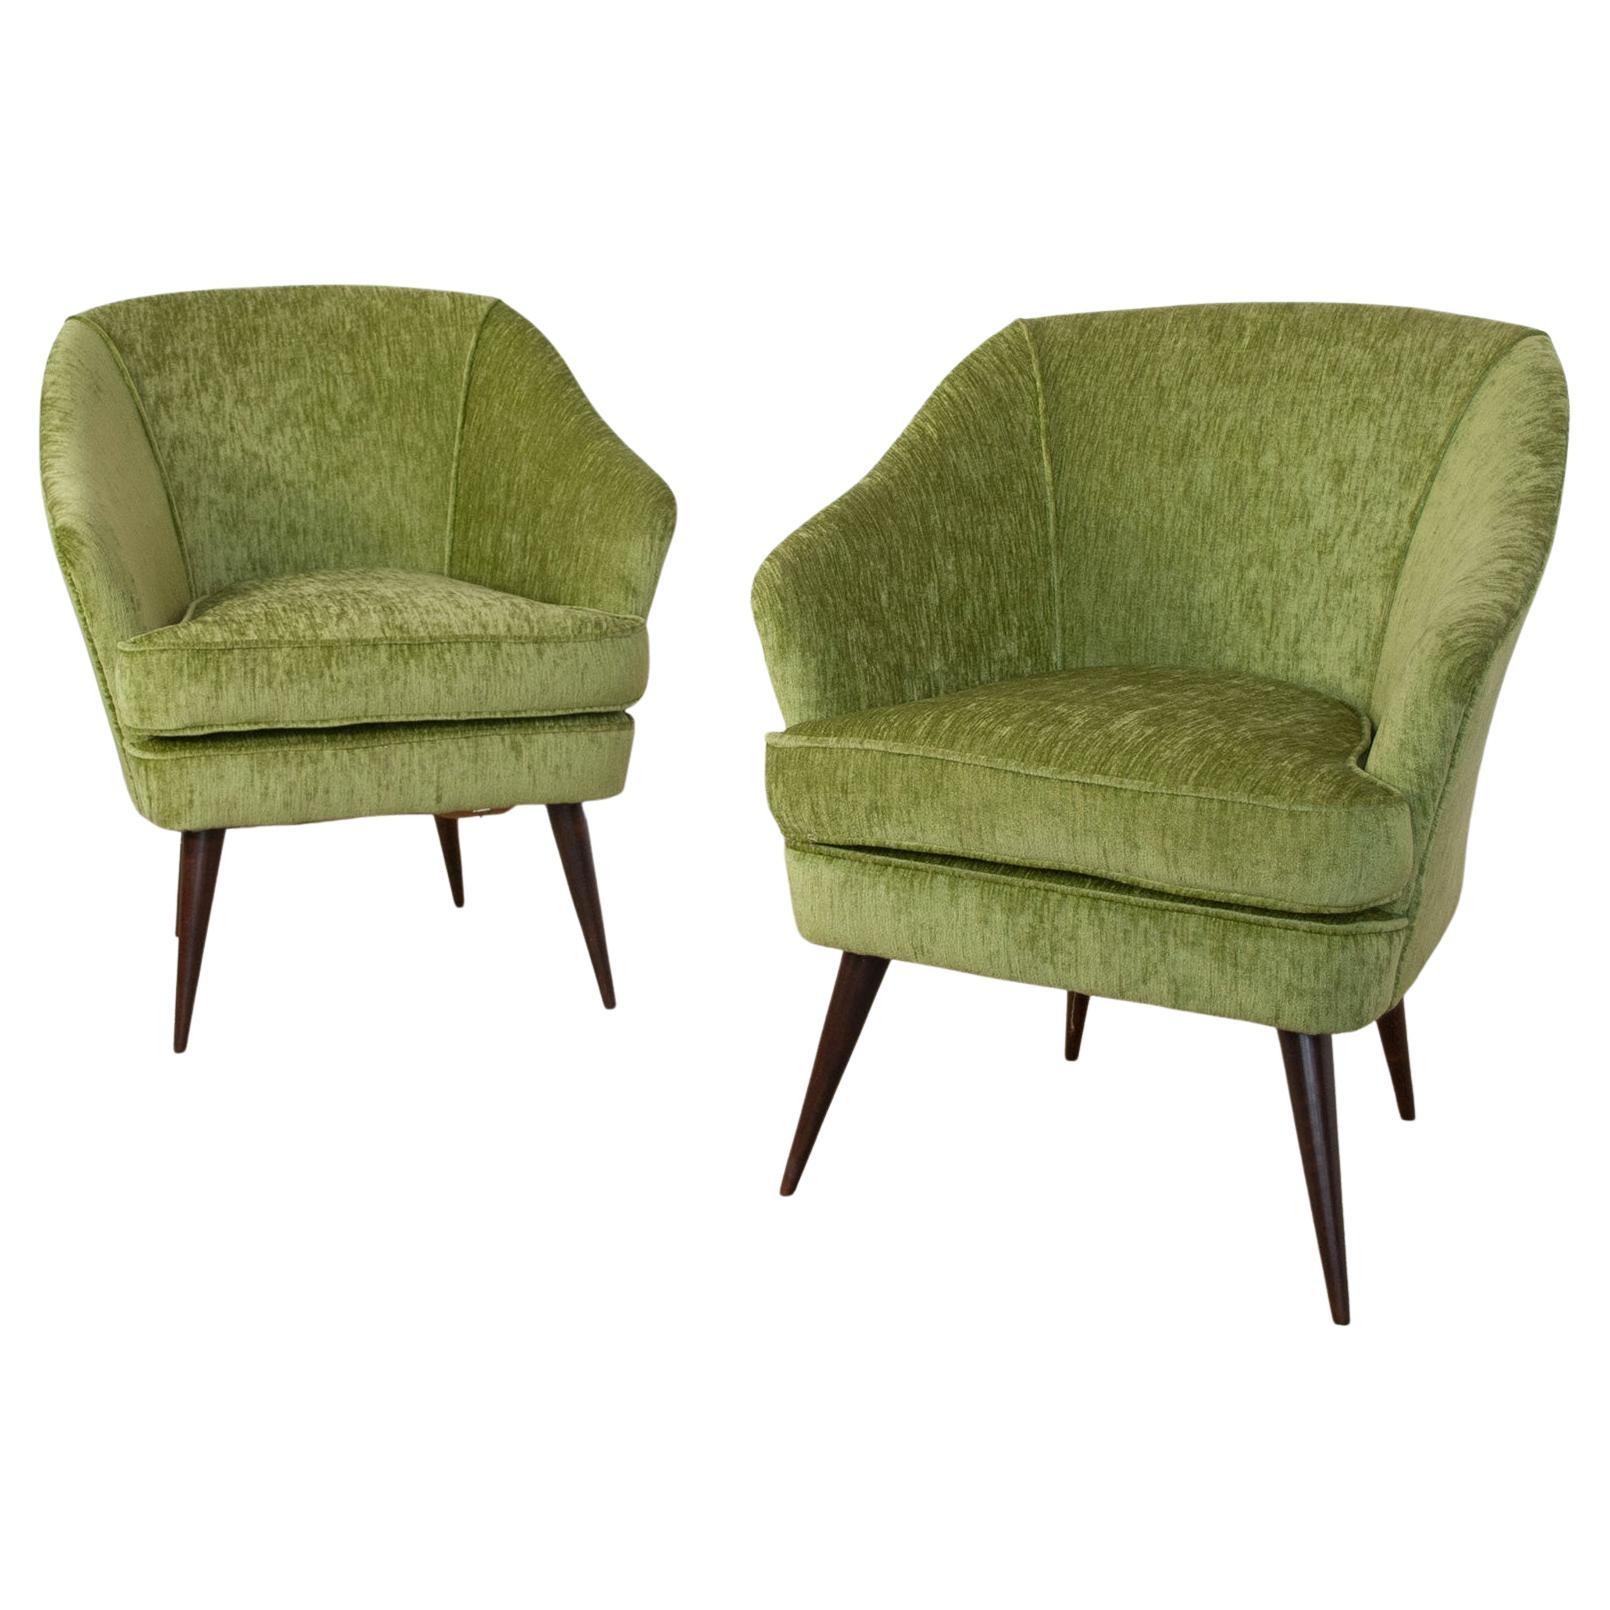 Set of two armchairs manufactured by Casa e Giardino designer Gio Ponti 1940 .